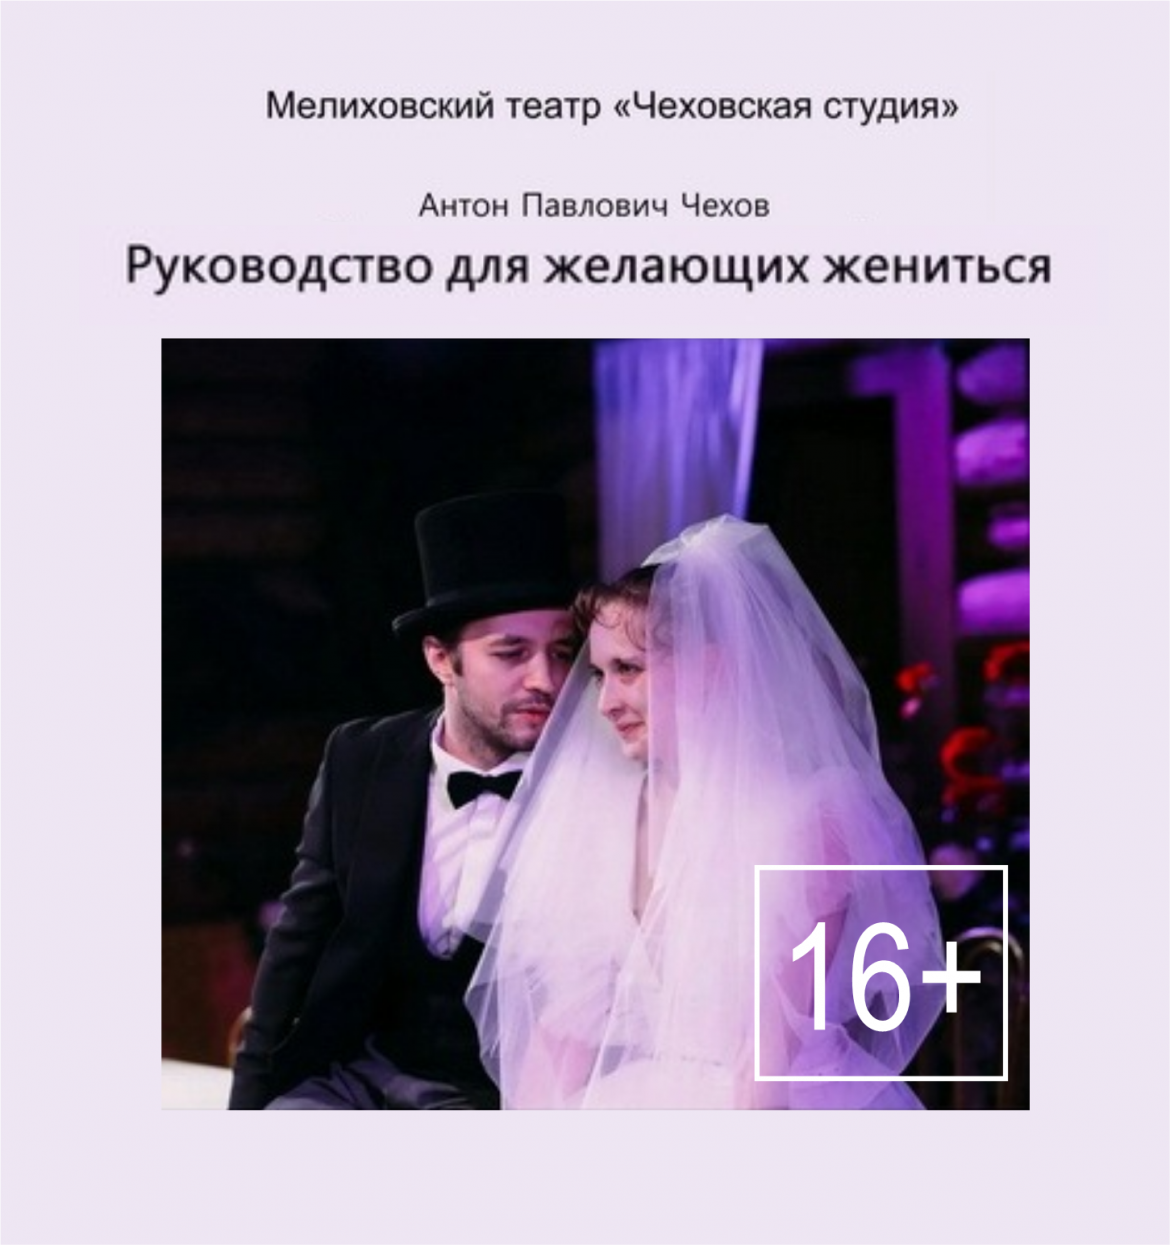 «Руководство для желающих жениться» 16+ от театра «Чеховская студия»